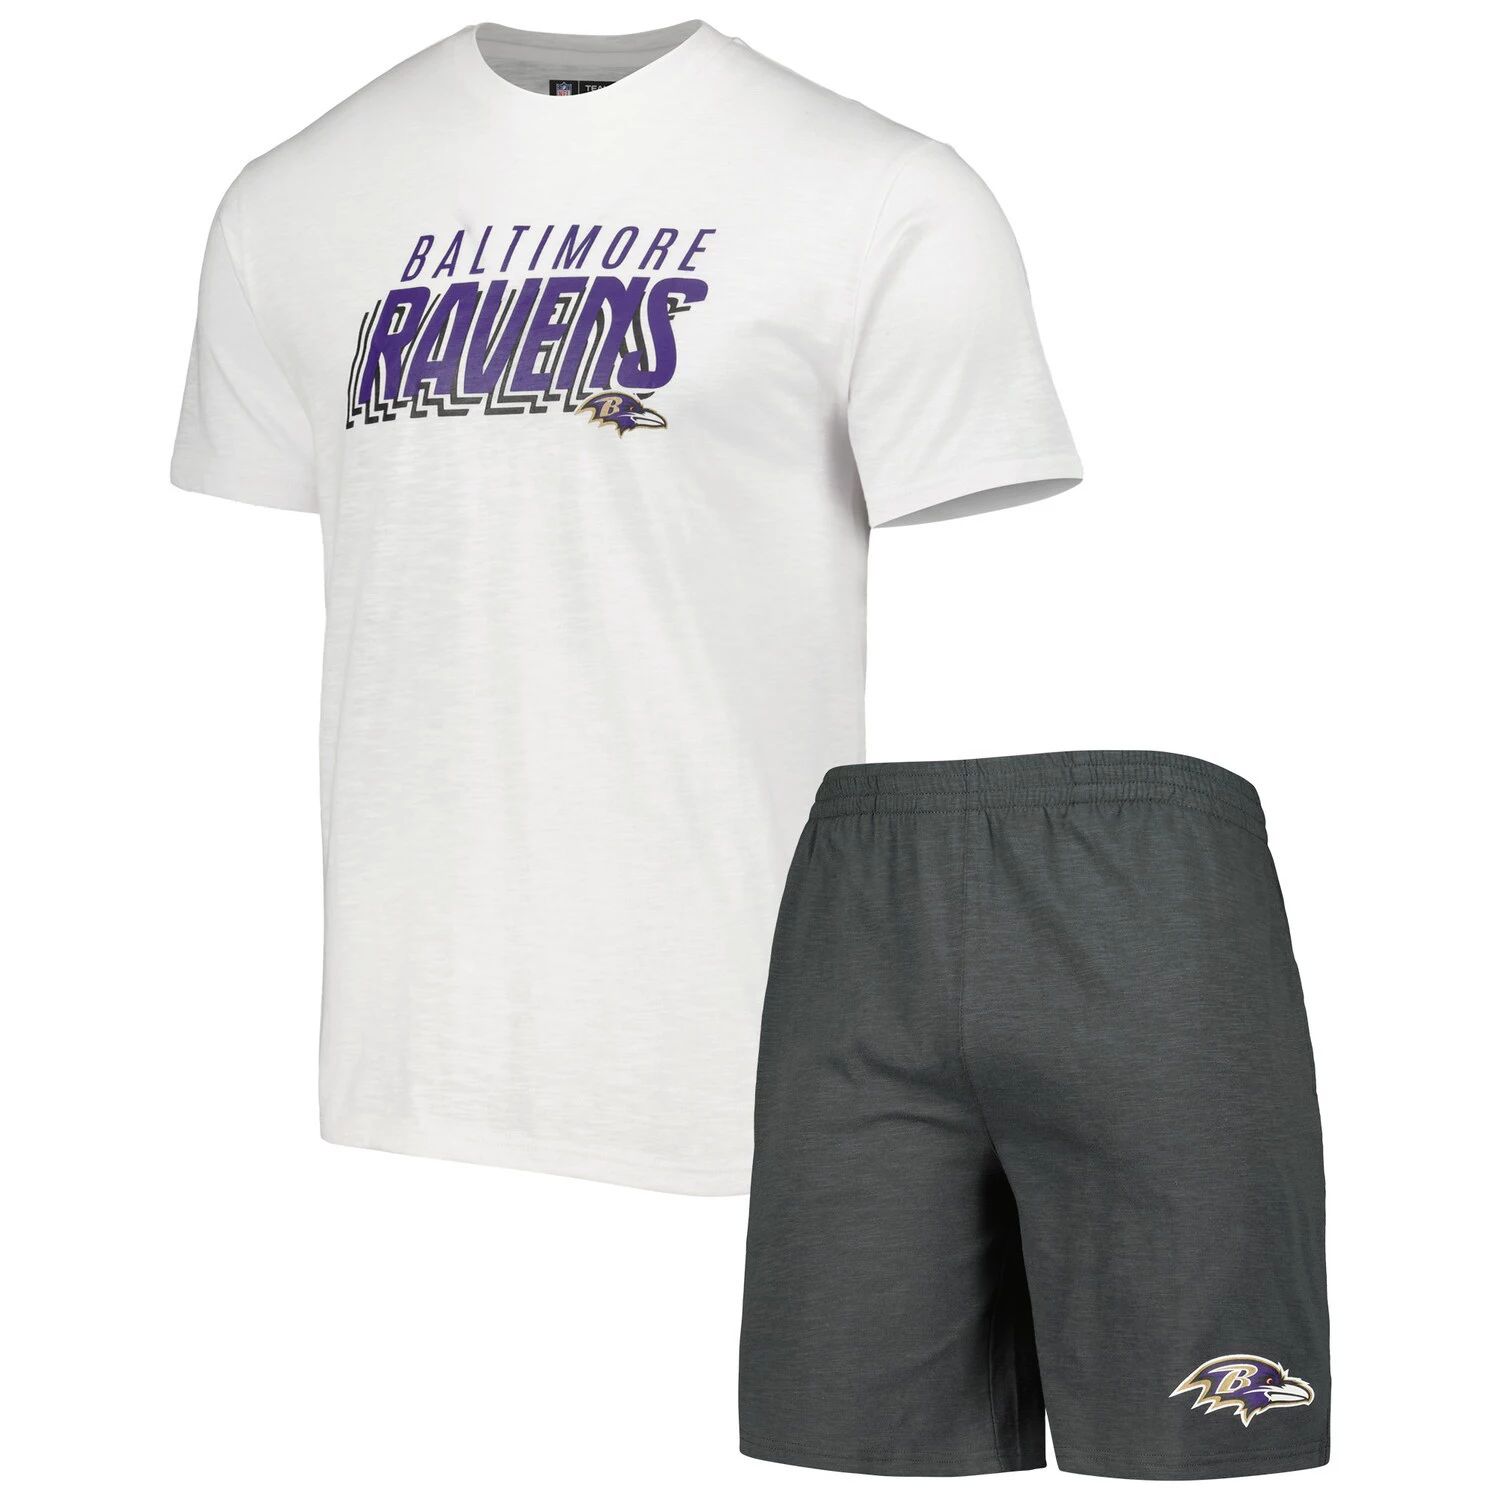 Мужской комплект для сна с футболкой и шортами для сна Baltimore Ravens Downfield, темно-серый/белый, Concepts Sport